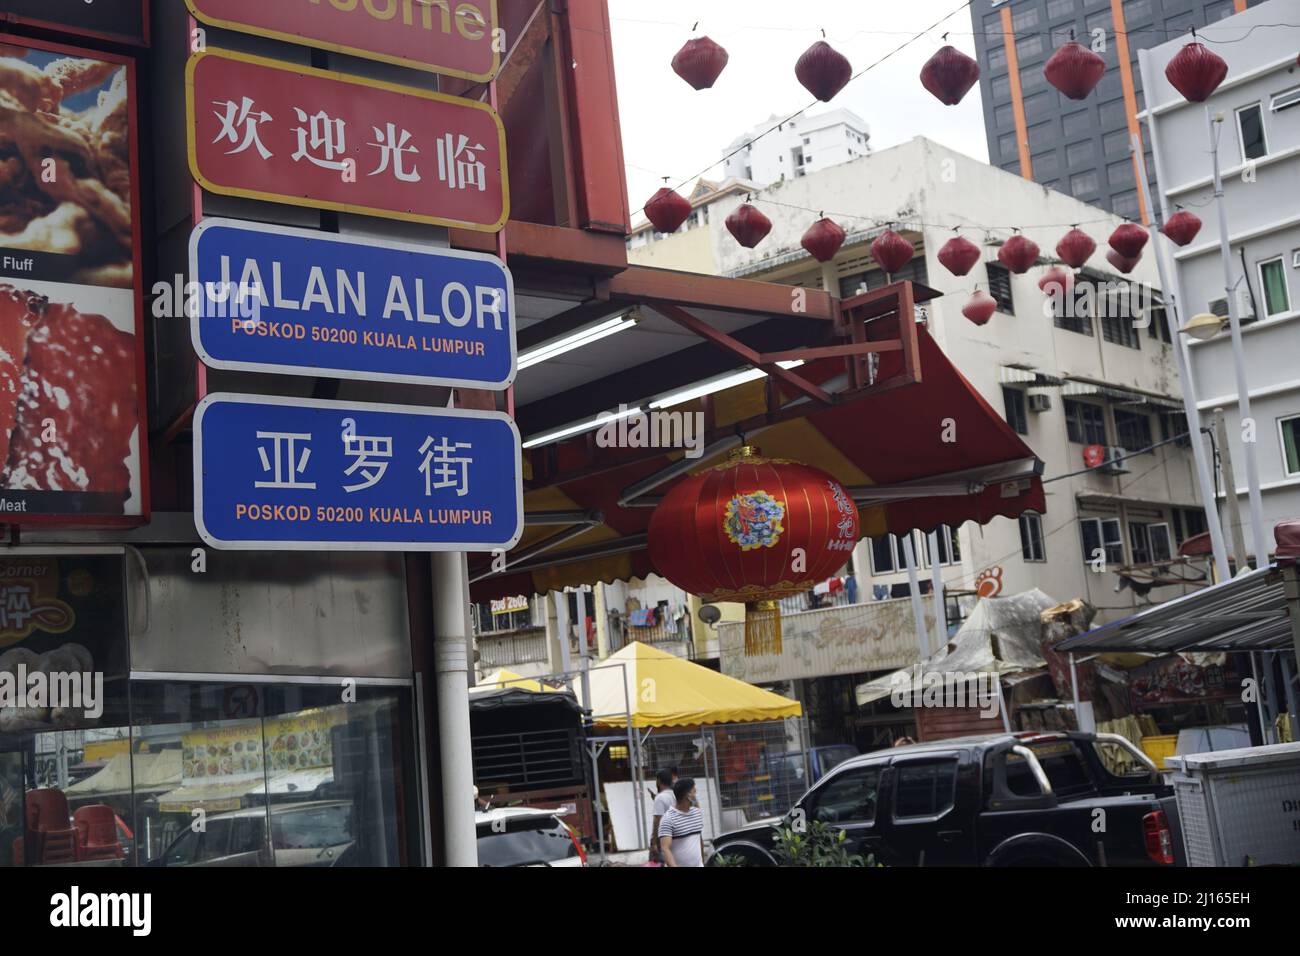 signboard to Jalan Alor food street, Bukit Bintang, Malaysia Stock Photo